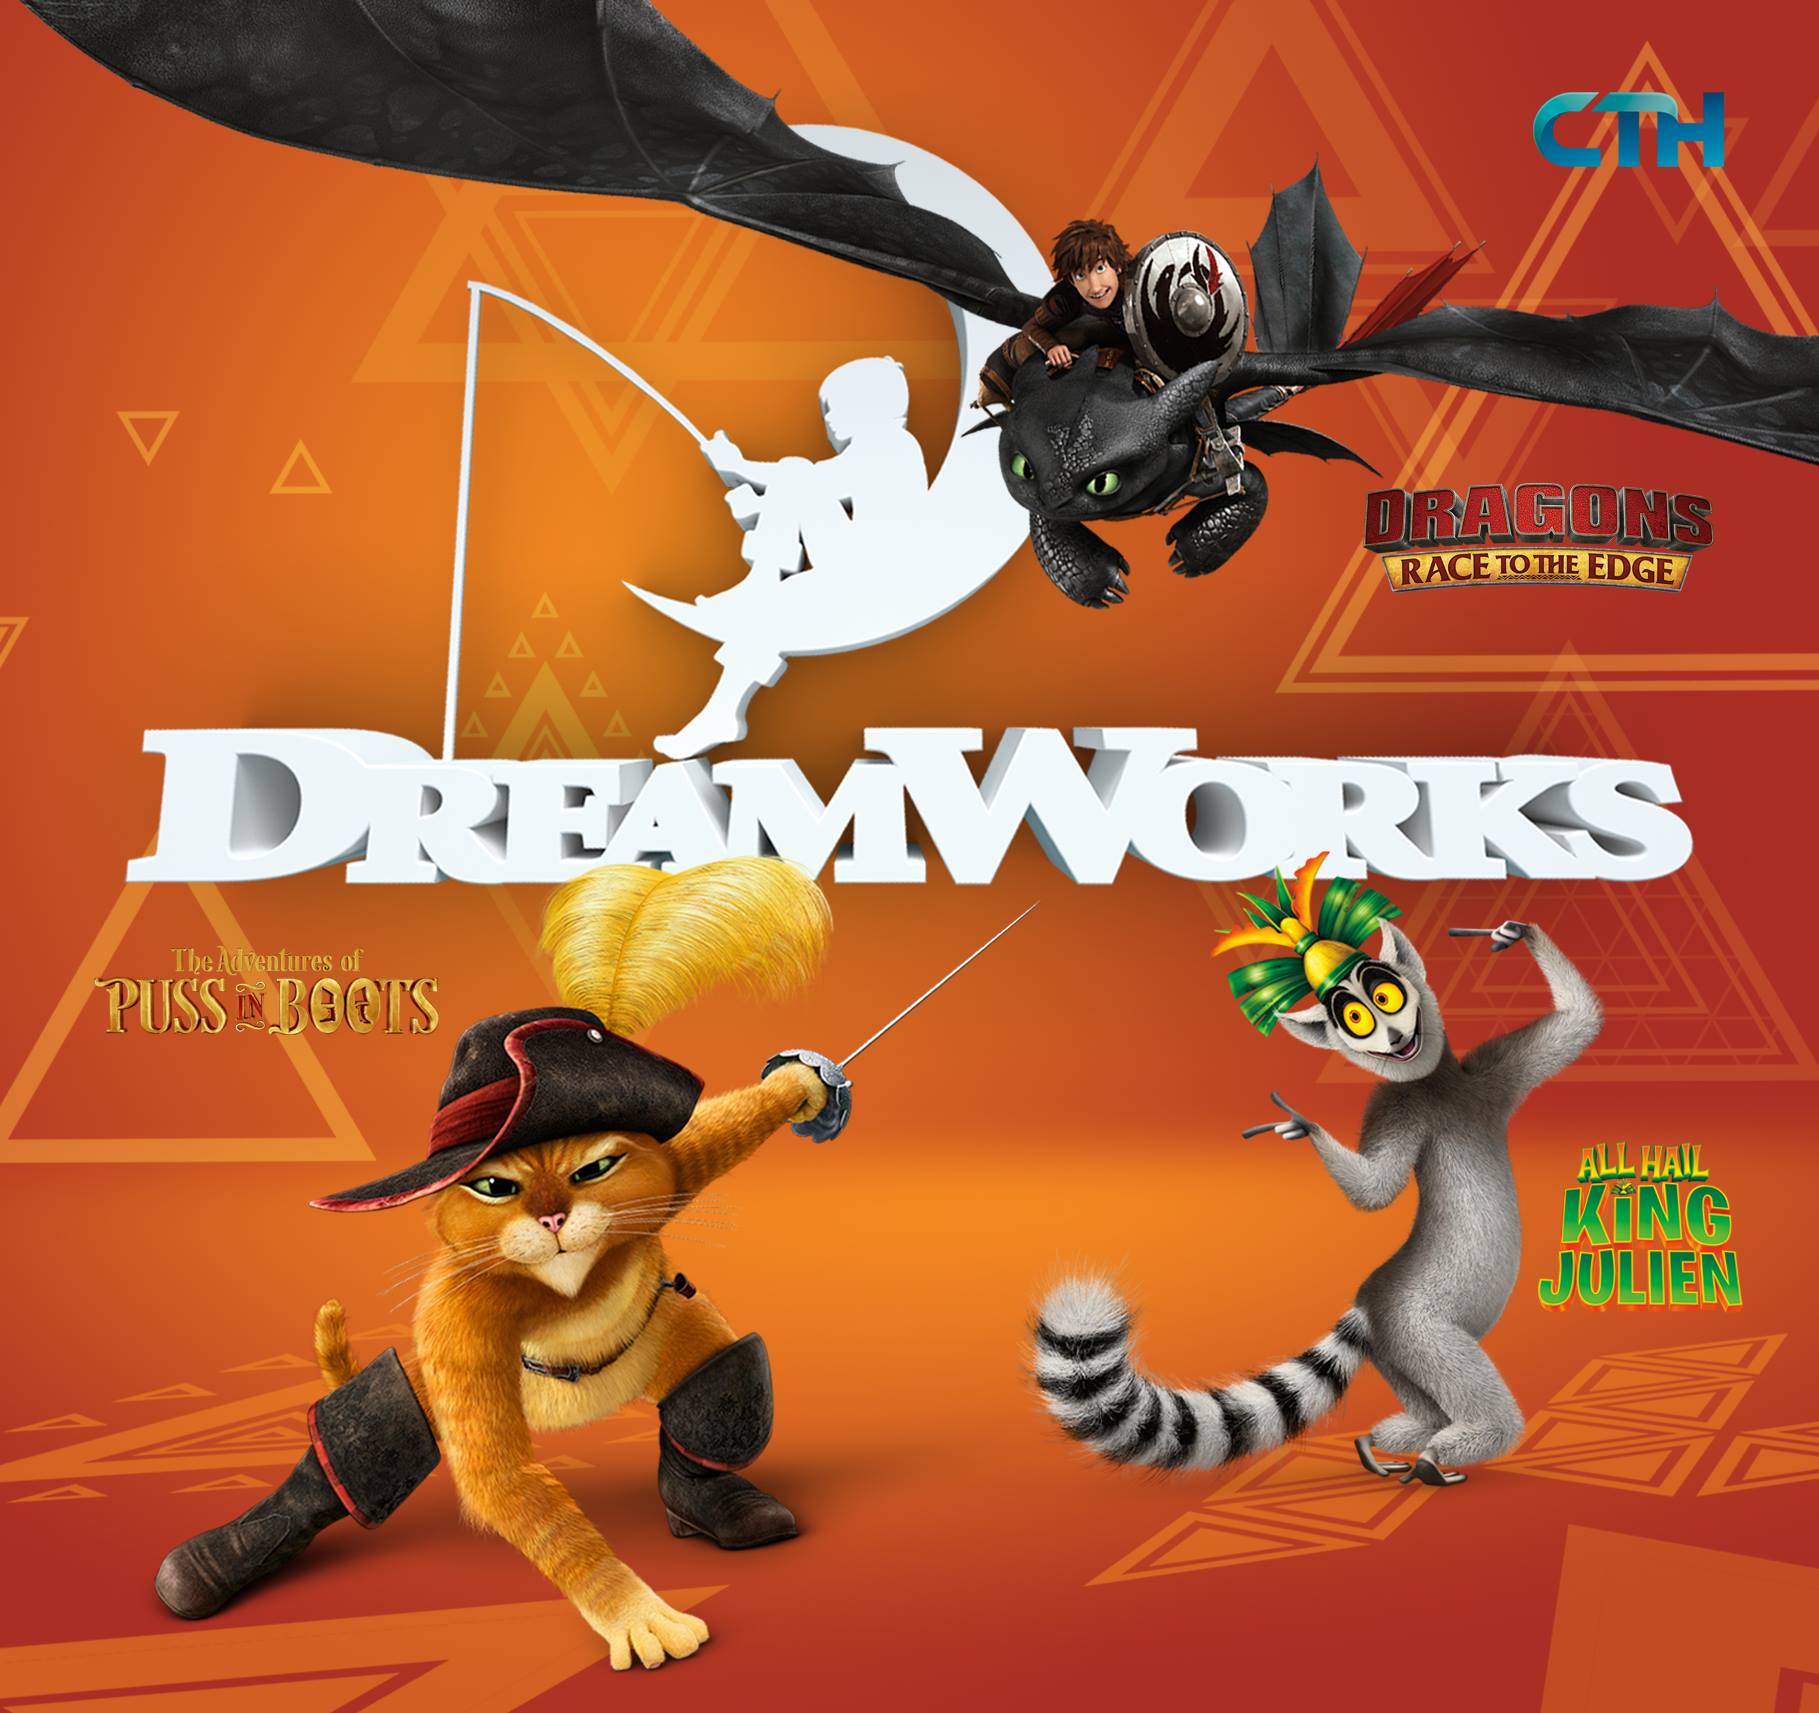 DreamWorks Channel | Dreamworks Animation Wiki | FANDOM powered by Wikia